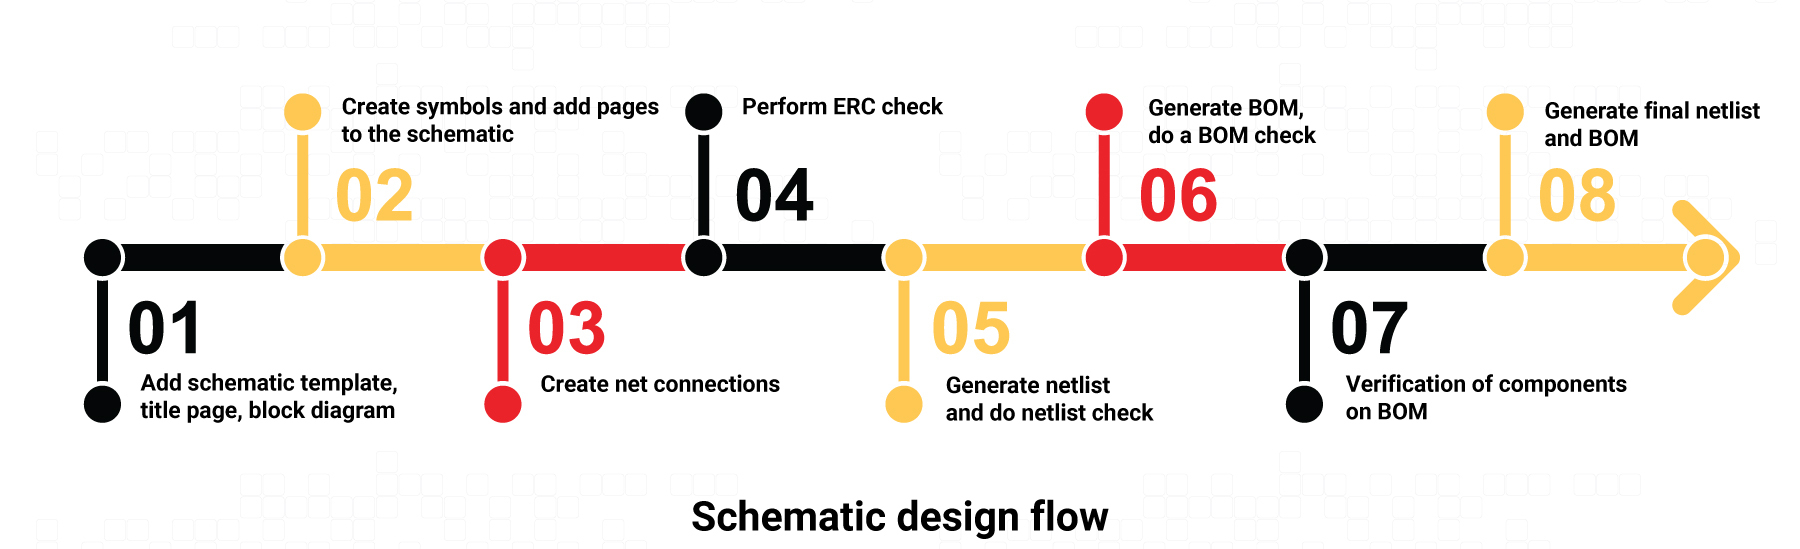 schematic-and-netlist-check-design-flow.jpg